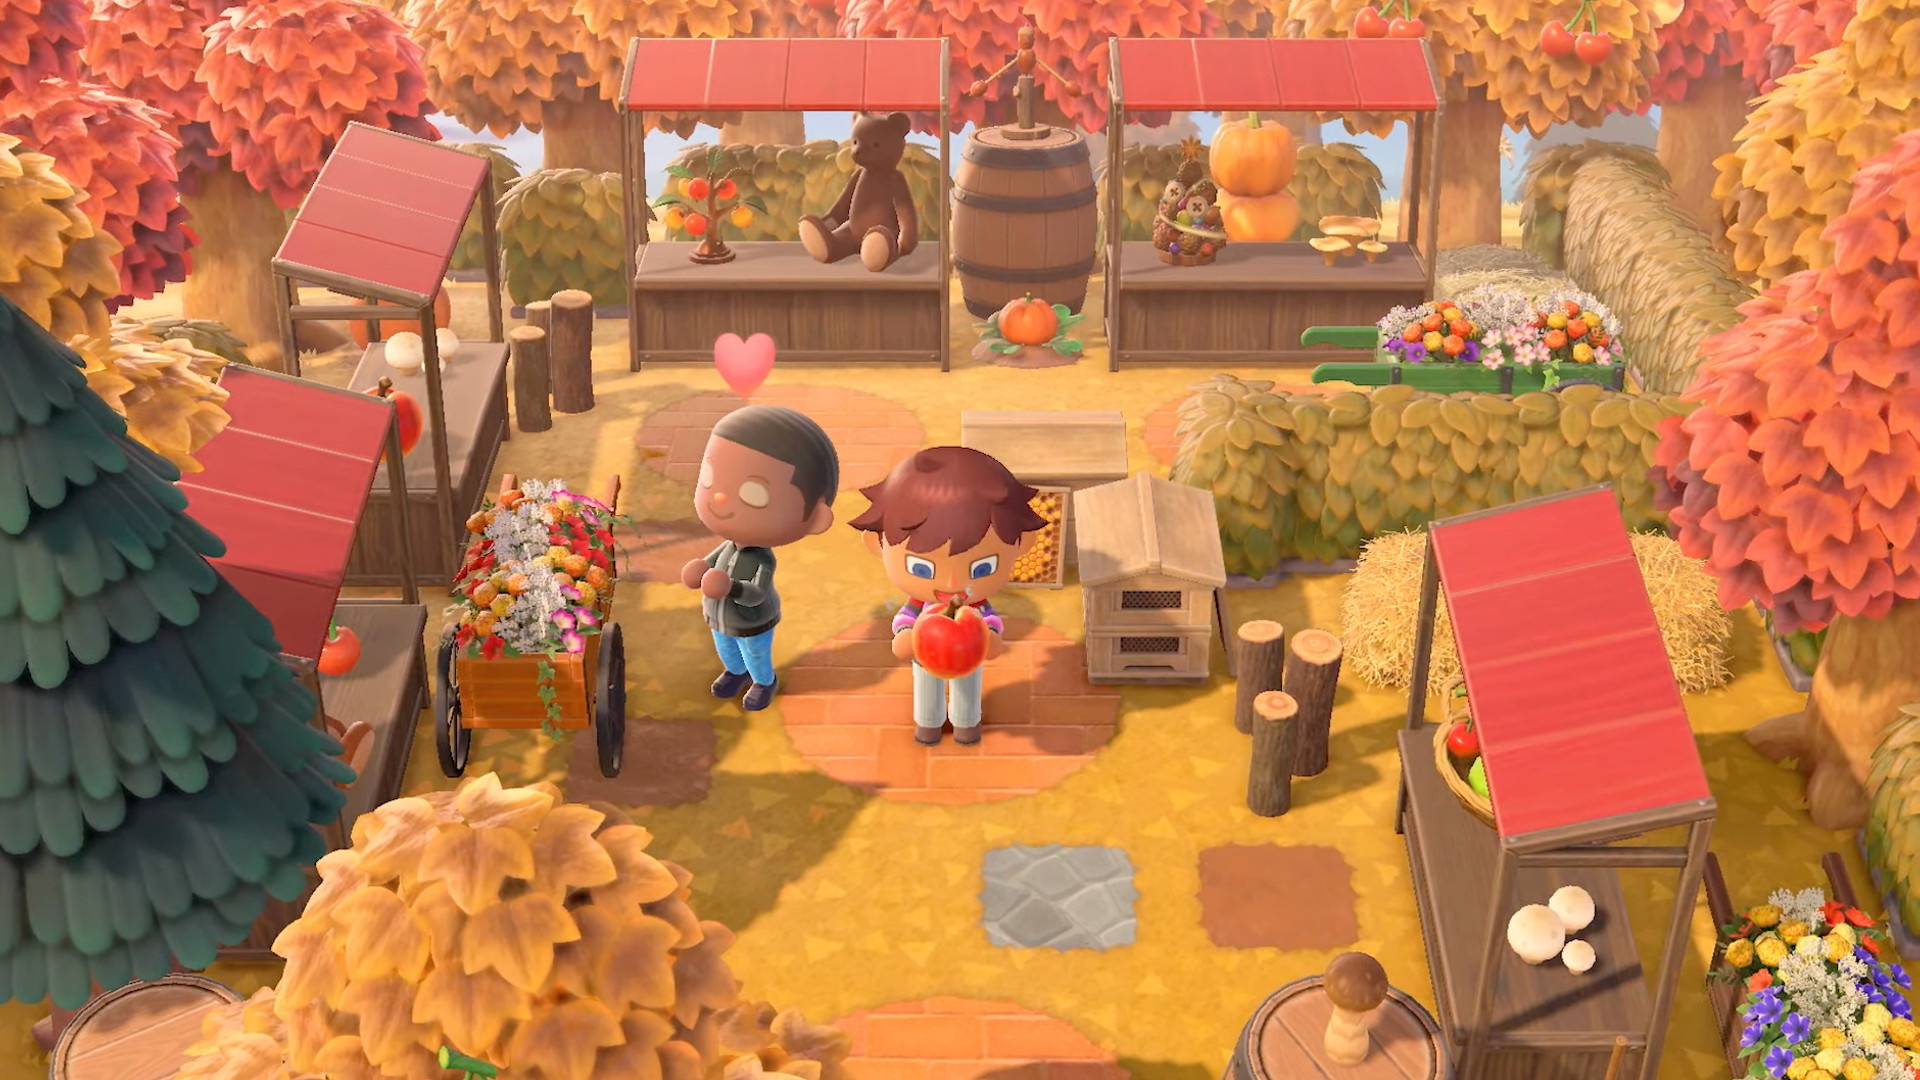 Mooie herfstachtige beelden in nieuwe Animal Crossing: New Horizons-trailer